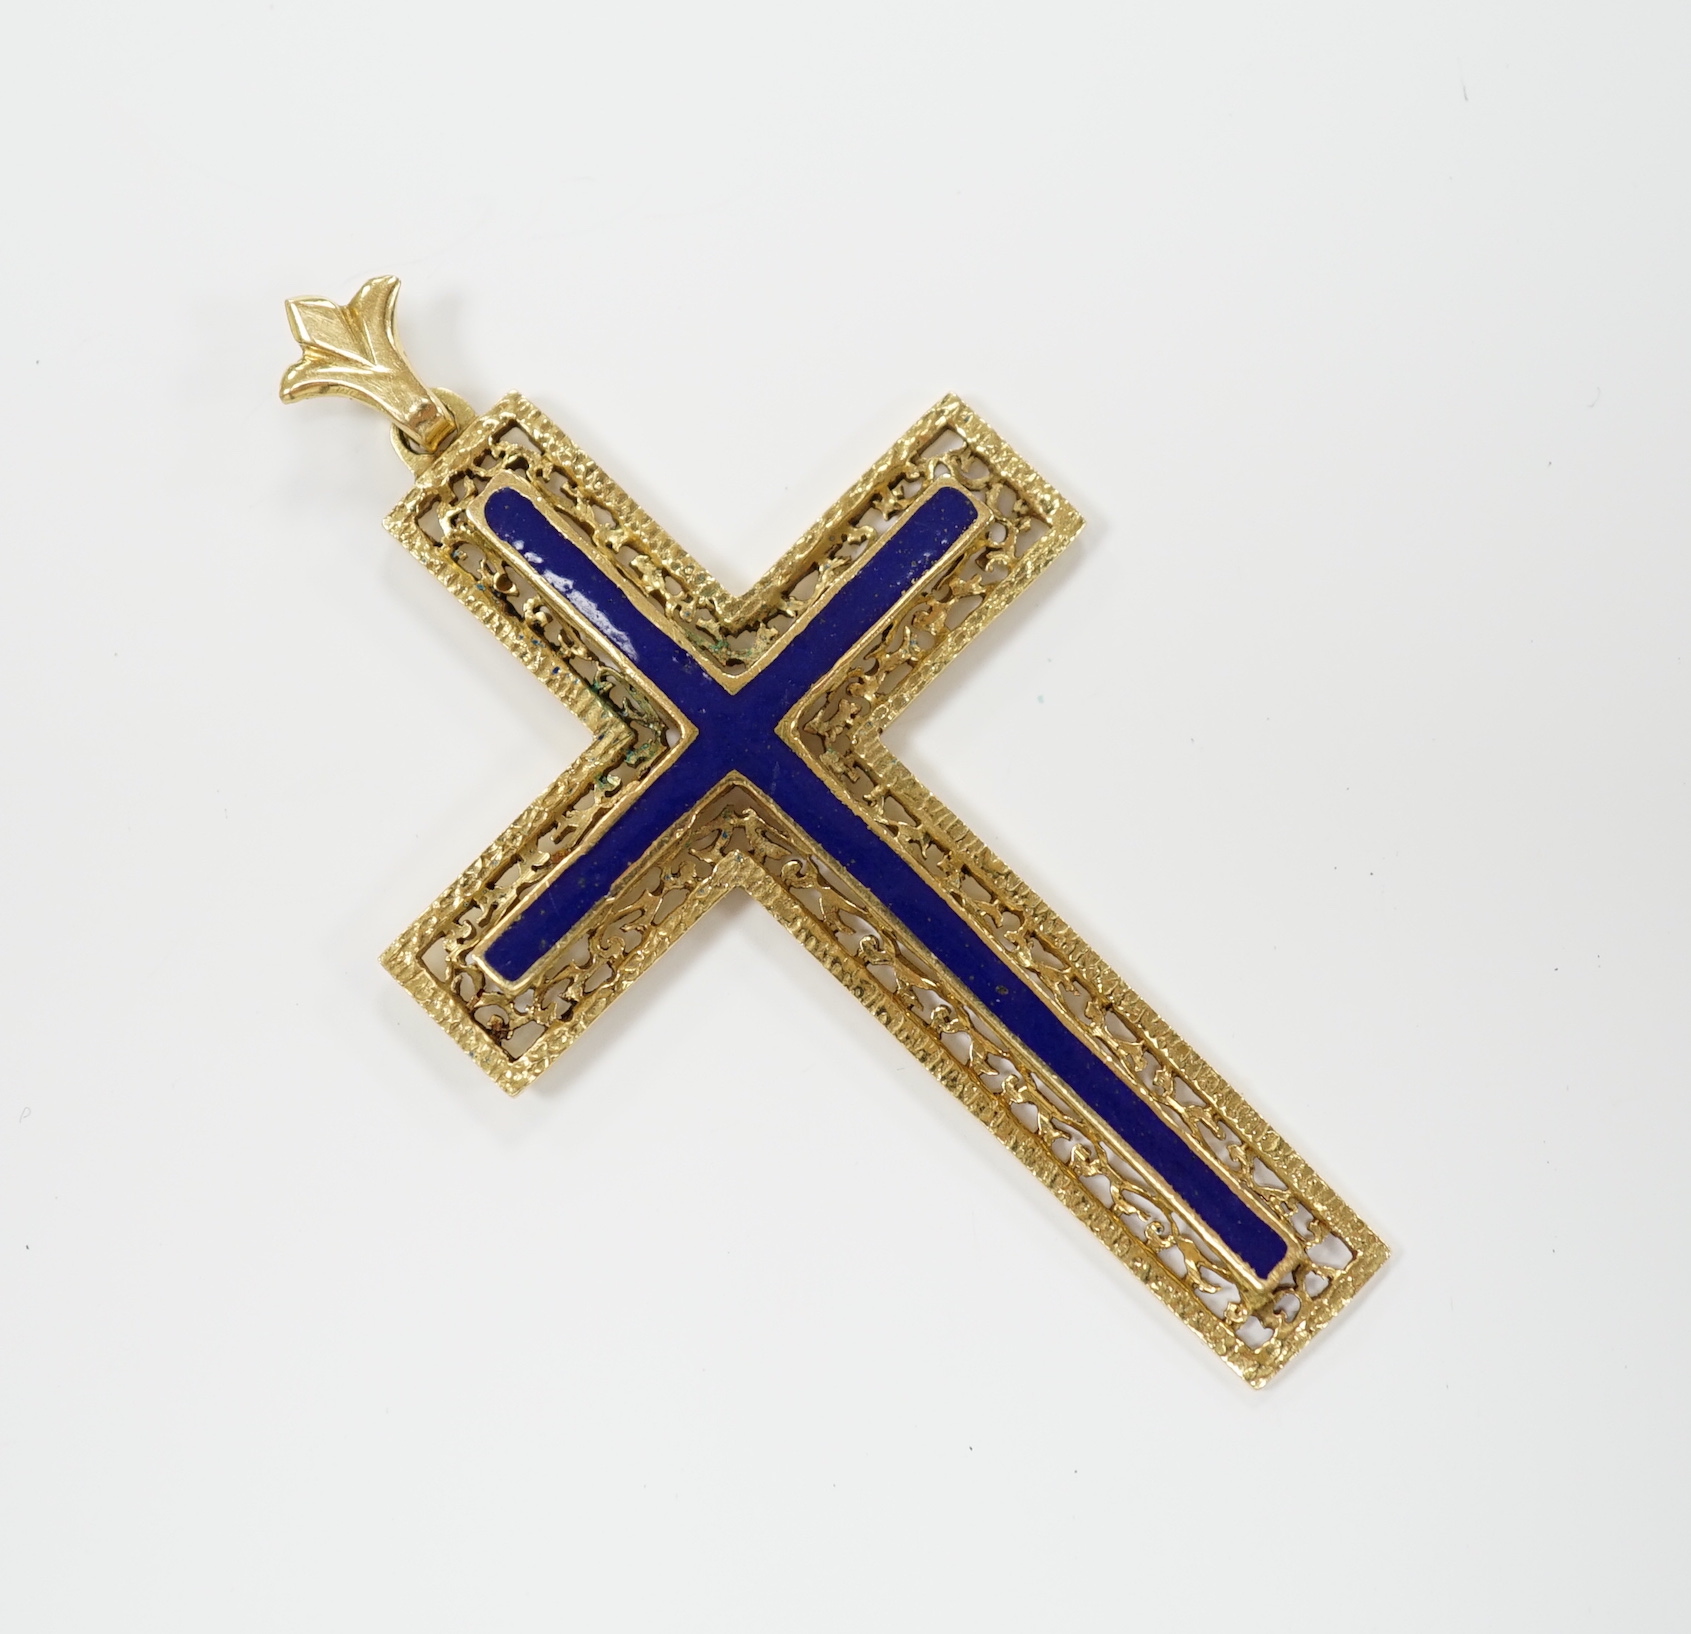 An 18k yellow metal and blue enamel set cross pendant, 6cm, gross weight 11.1 grams.